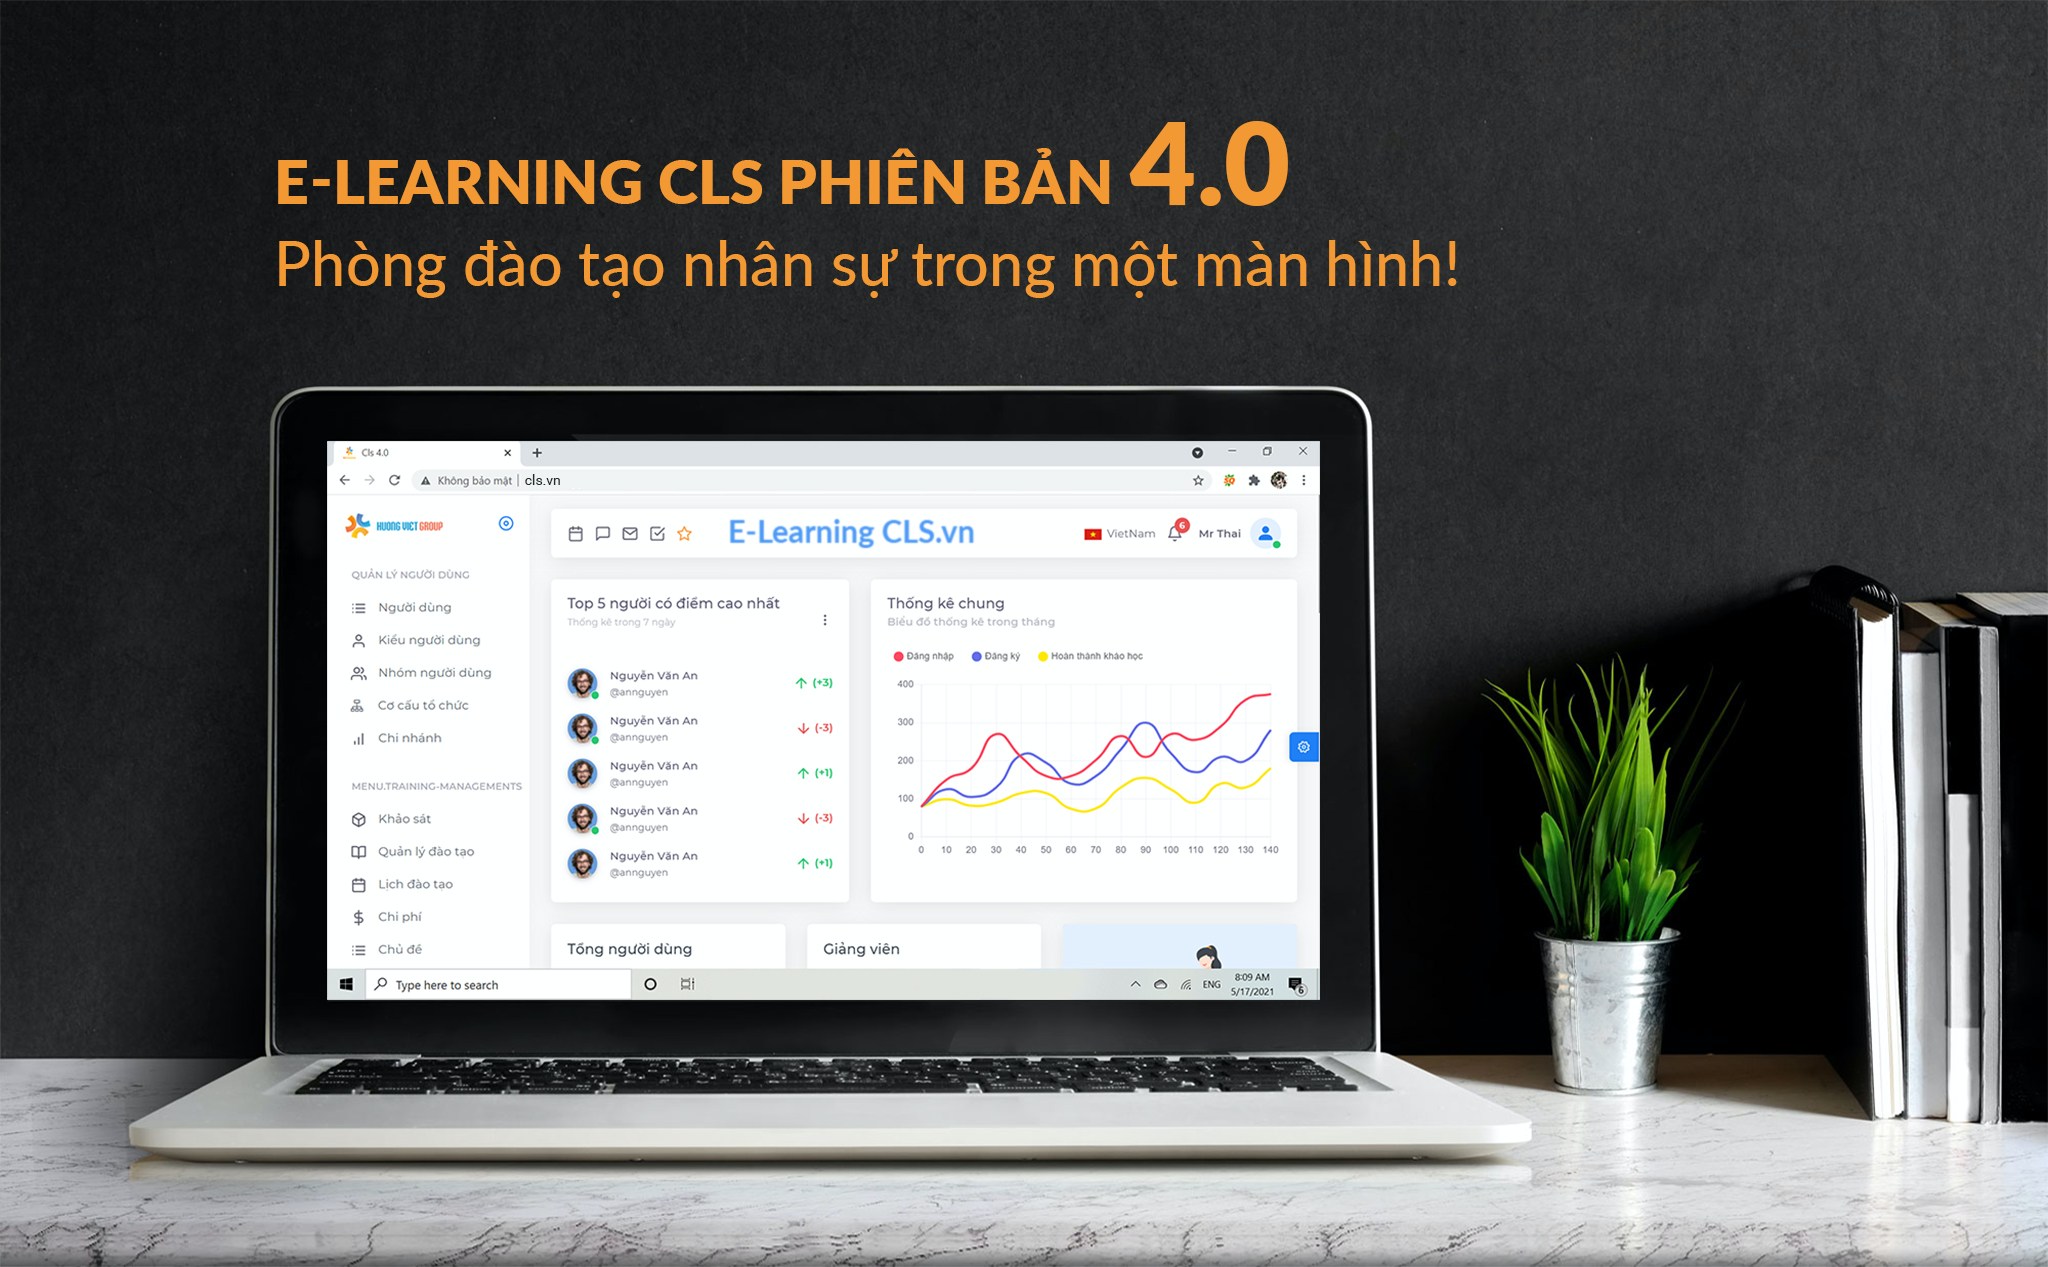 [QC] E-Learning CLS phiên bản 4.0 - Phòng đào tạo nhân sự trong một màn hình!